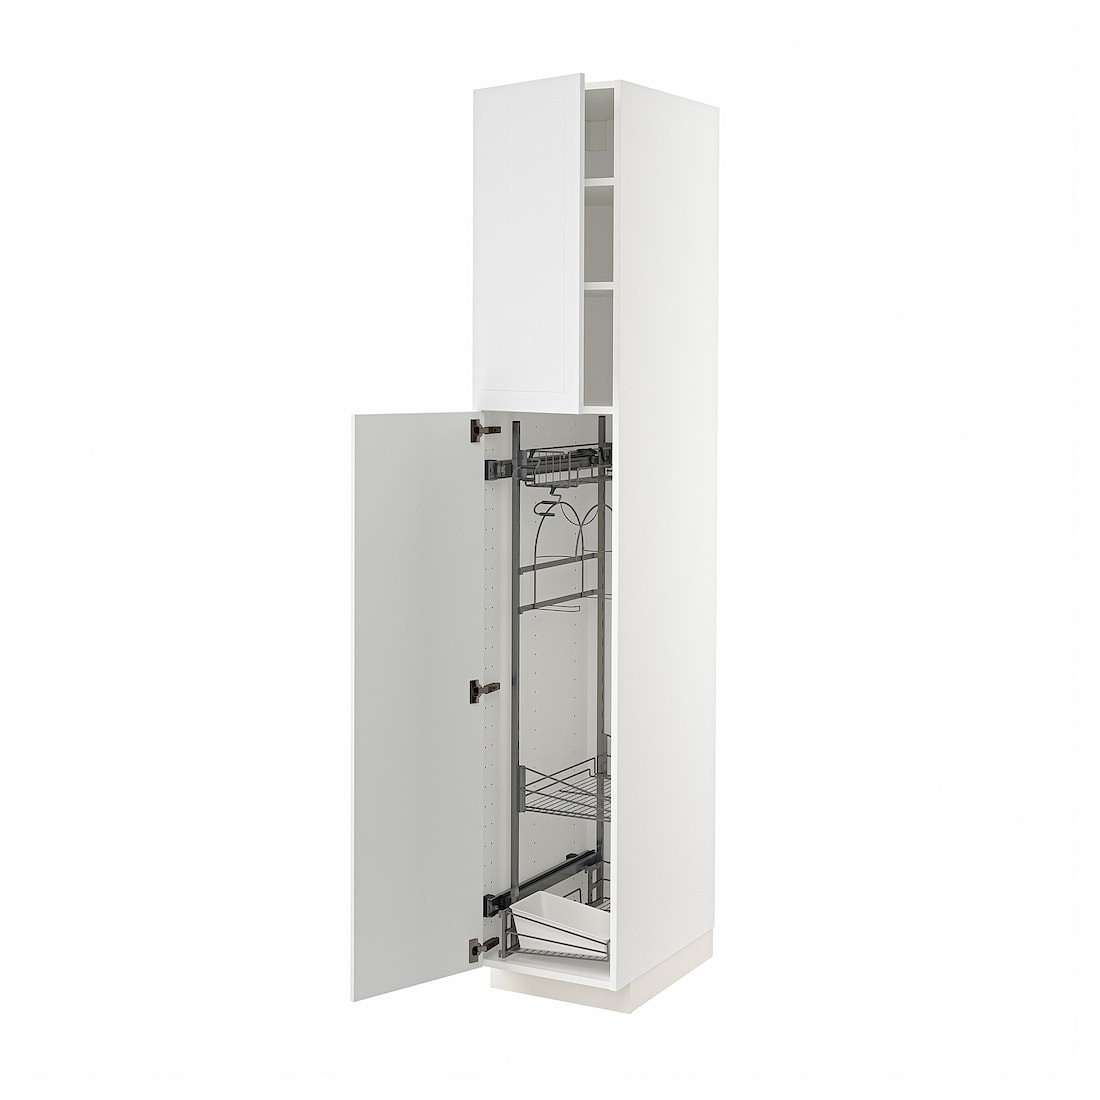 METOD МЕТОД Высокий шкаф с отделением для аксессуаров для уборки, белый / Stensund белый, 40x60x220 см